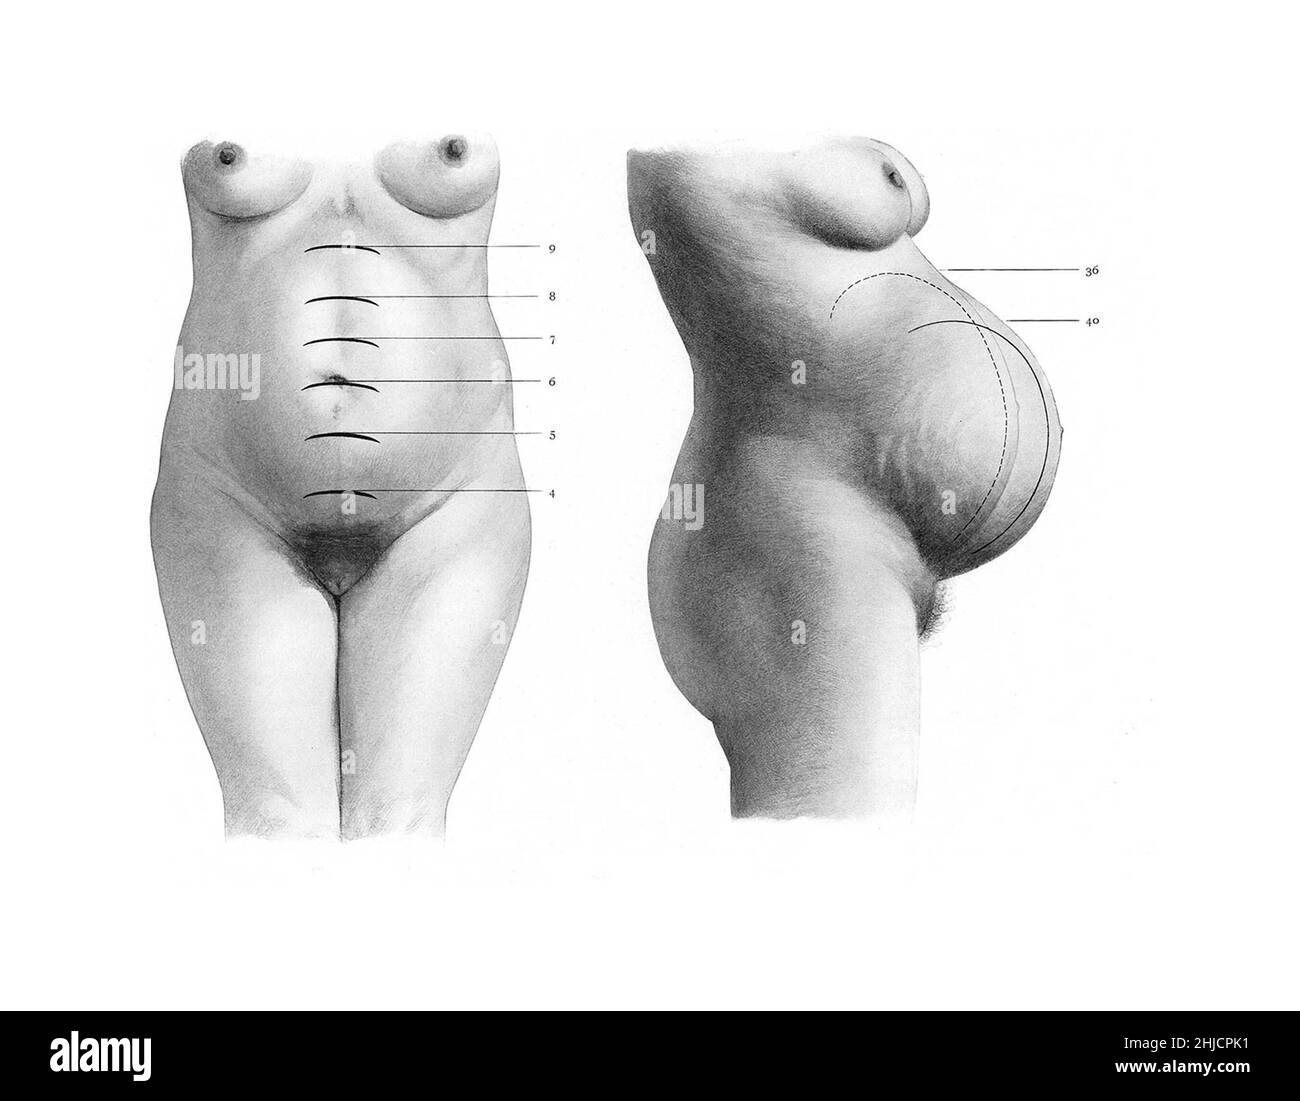 Durante la gravidanza, l'utero si espande, creando una porzione maggiore dell'addome della donna. A sinistra è la vista anteriore con l'etichetta mesi; a destra è una vista laterale che indica le ultime 4 settimane. Durante le fasi finali della gestazione prima del parto, il feto e l'utero scenderanno in una posizione più bassa. Foto Stock